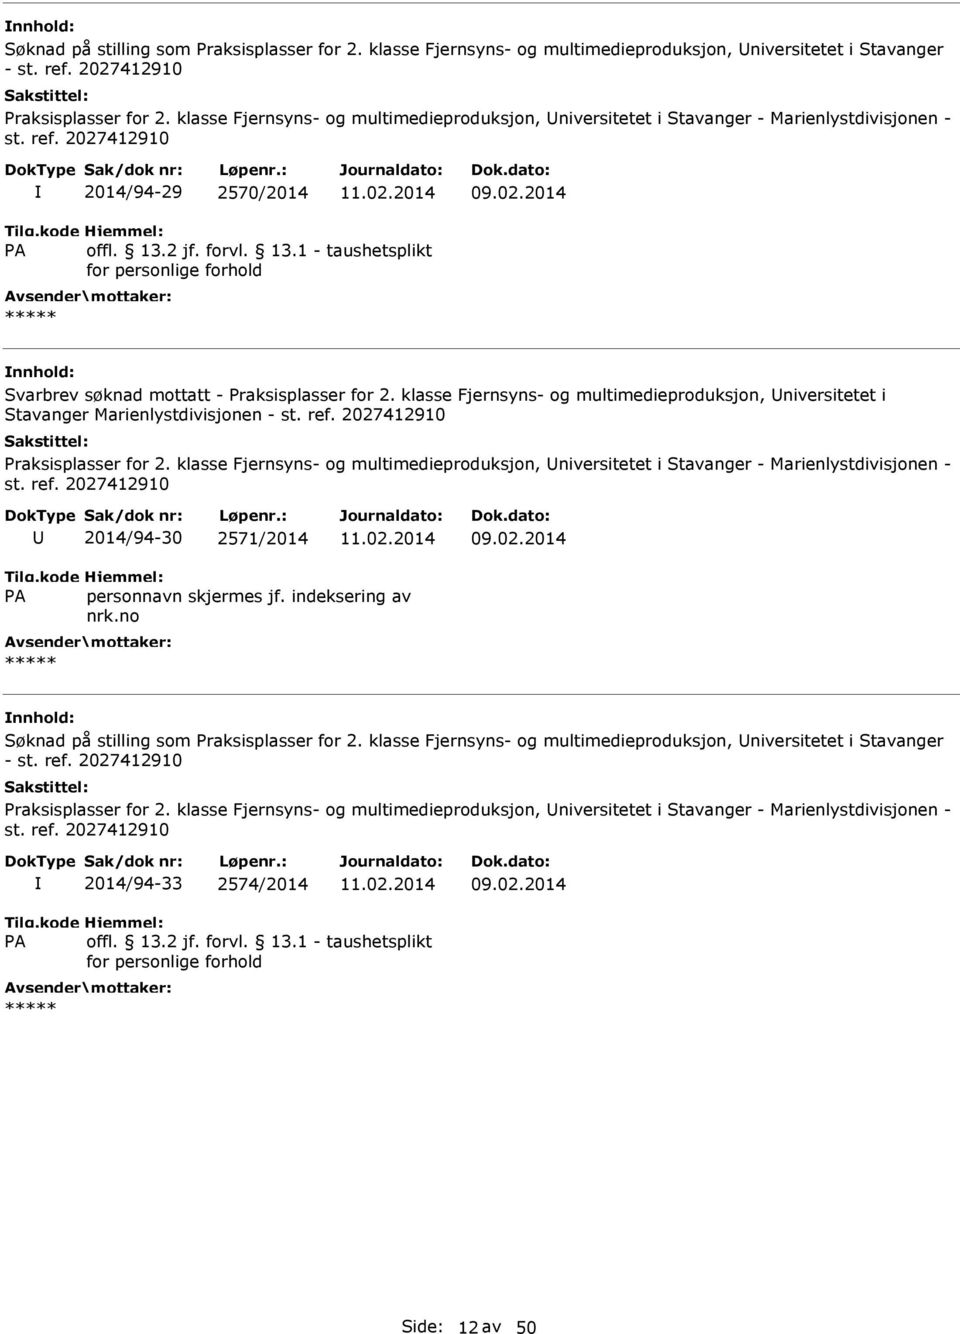 klasse Fjernsyns- og multimedieproduksjon, niversitetet i Stavanger Marienlystdivisjonen - st. ref. 2027412910 Praksisplasser for 2.